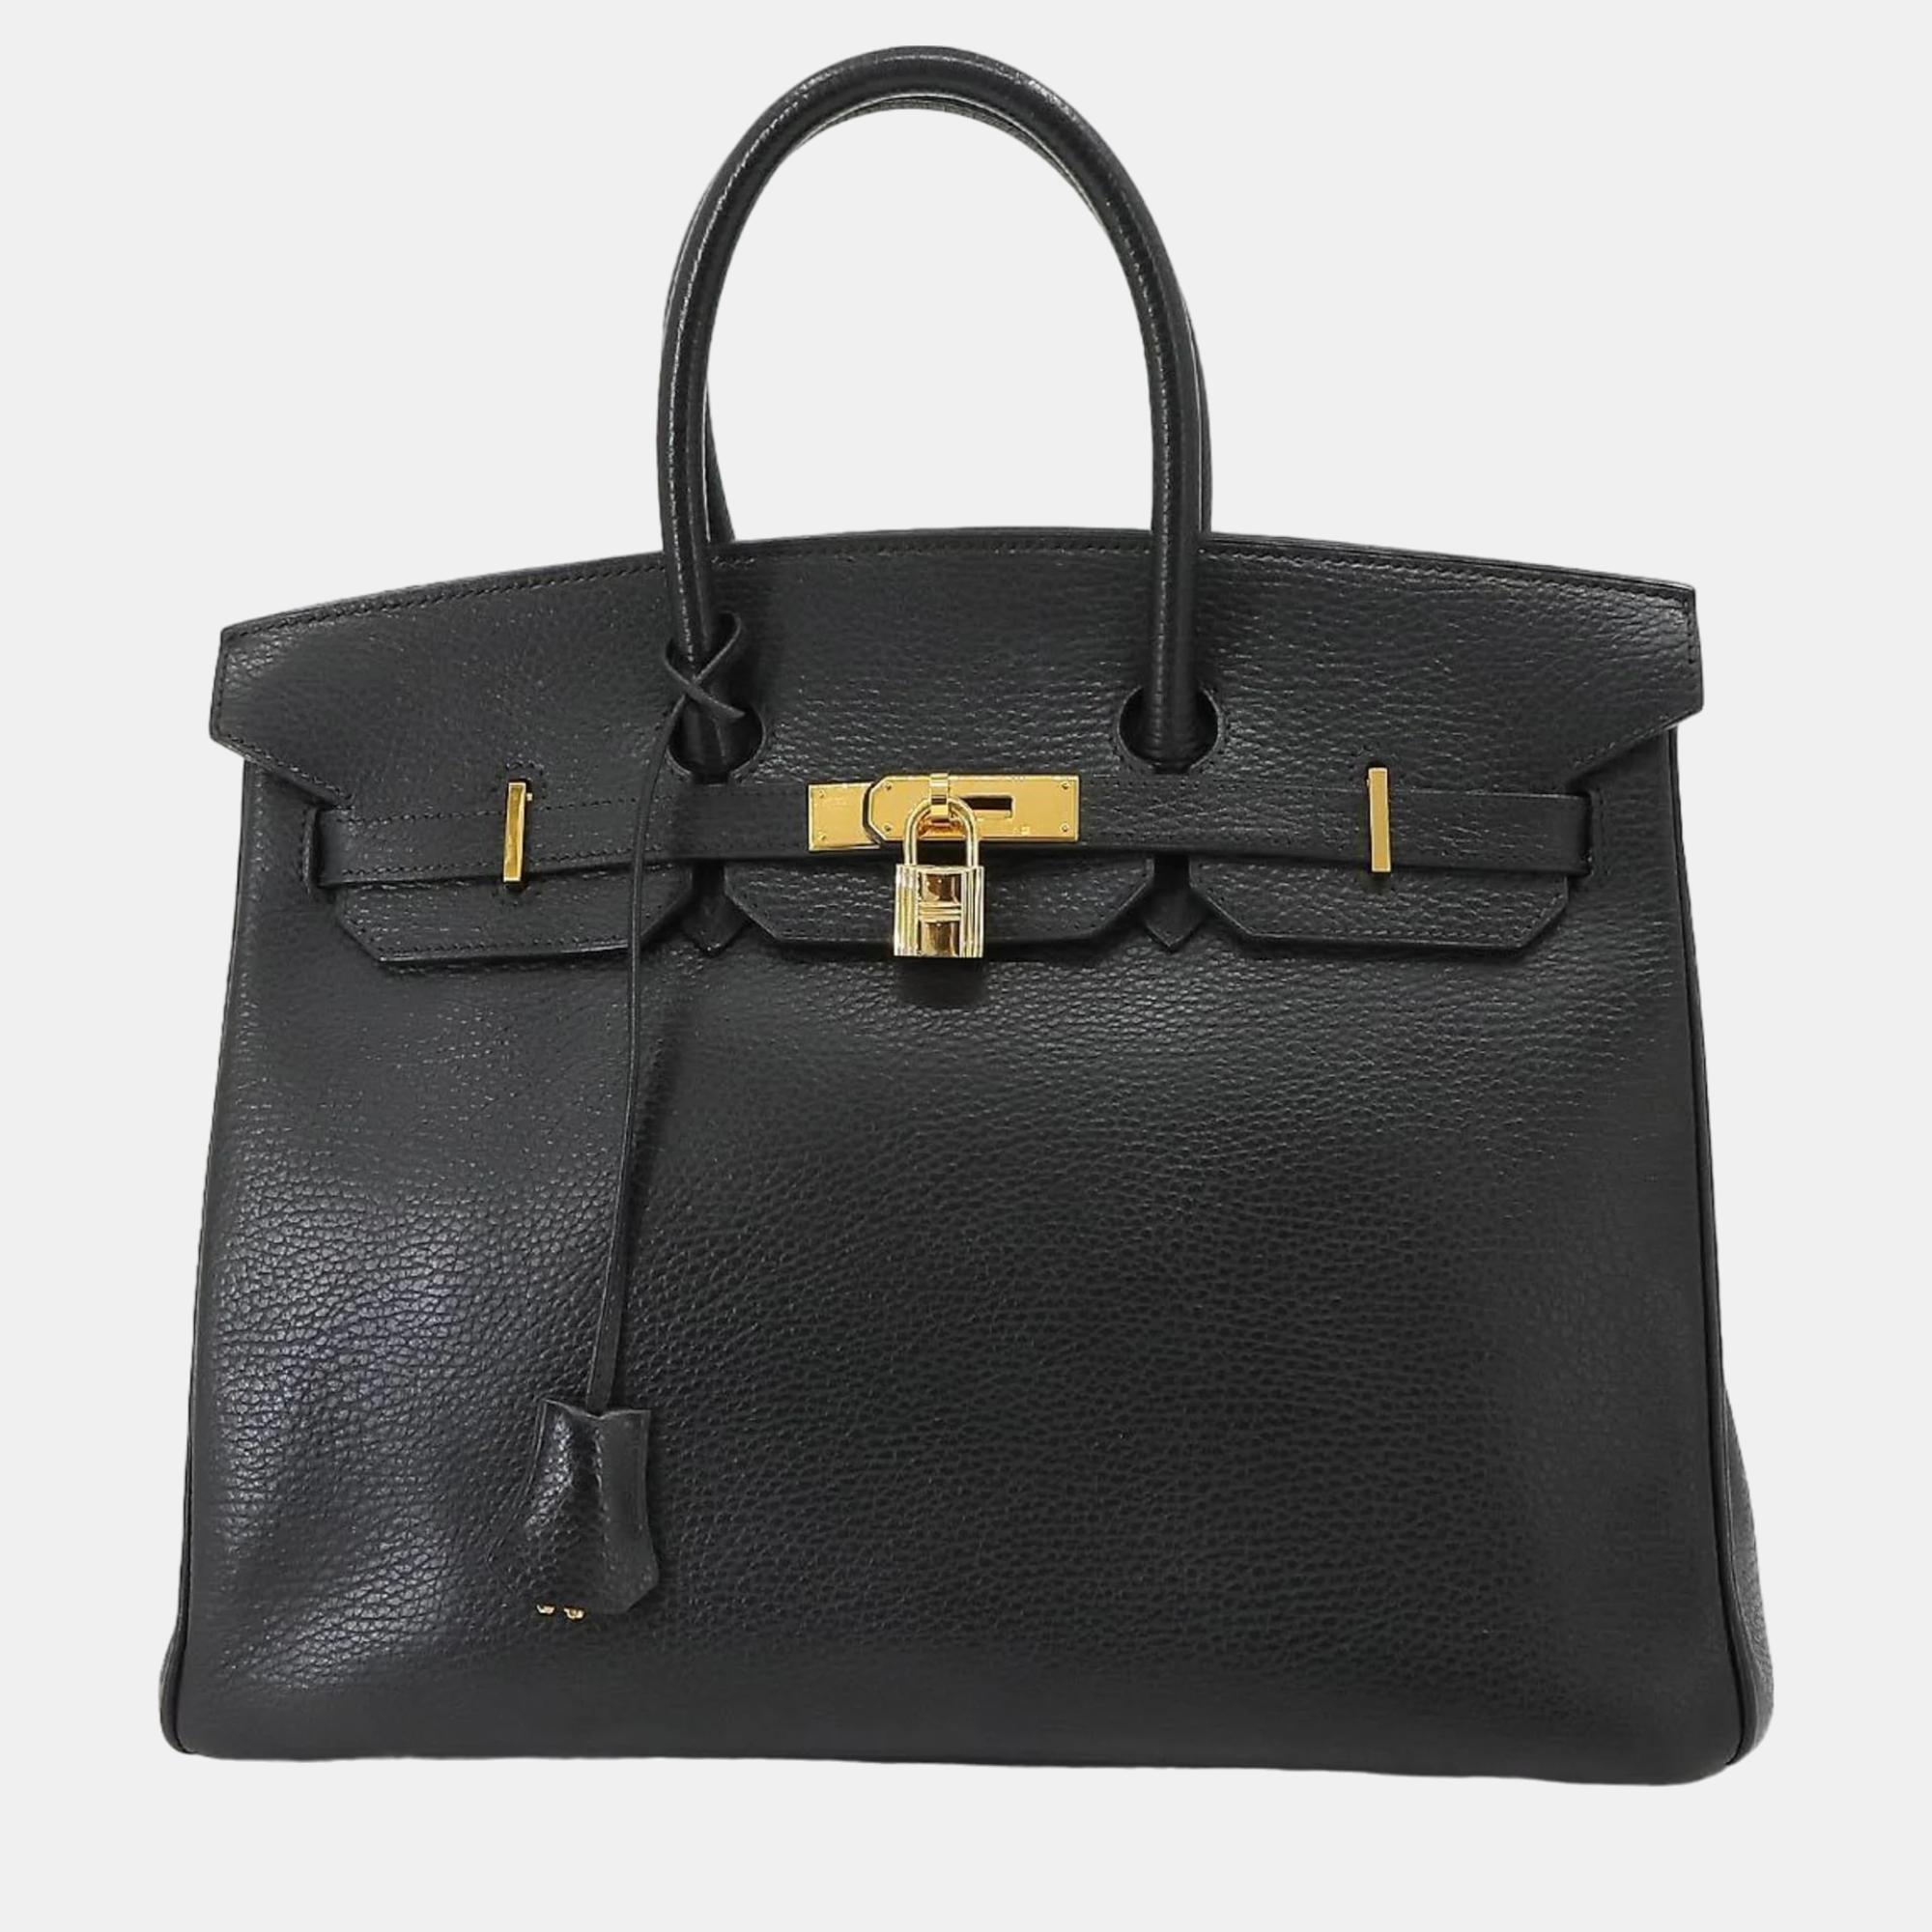 Hermes black ardennes leather birkin 35 tote bag